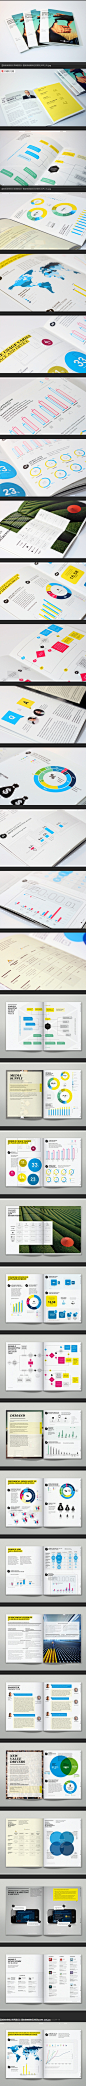 清新的表格统计类画册设计-图麦格纳媒体经济报告[32P]-平面设计